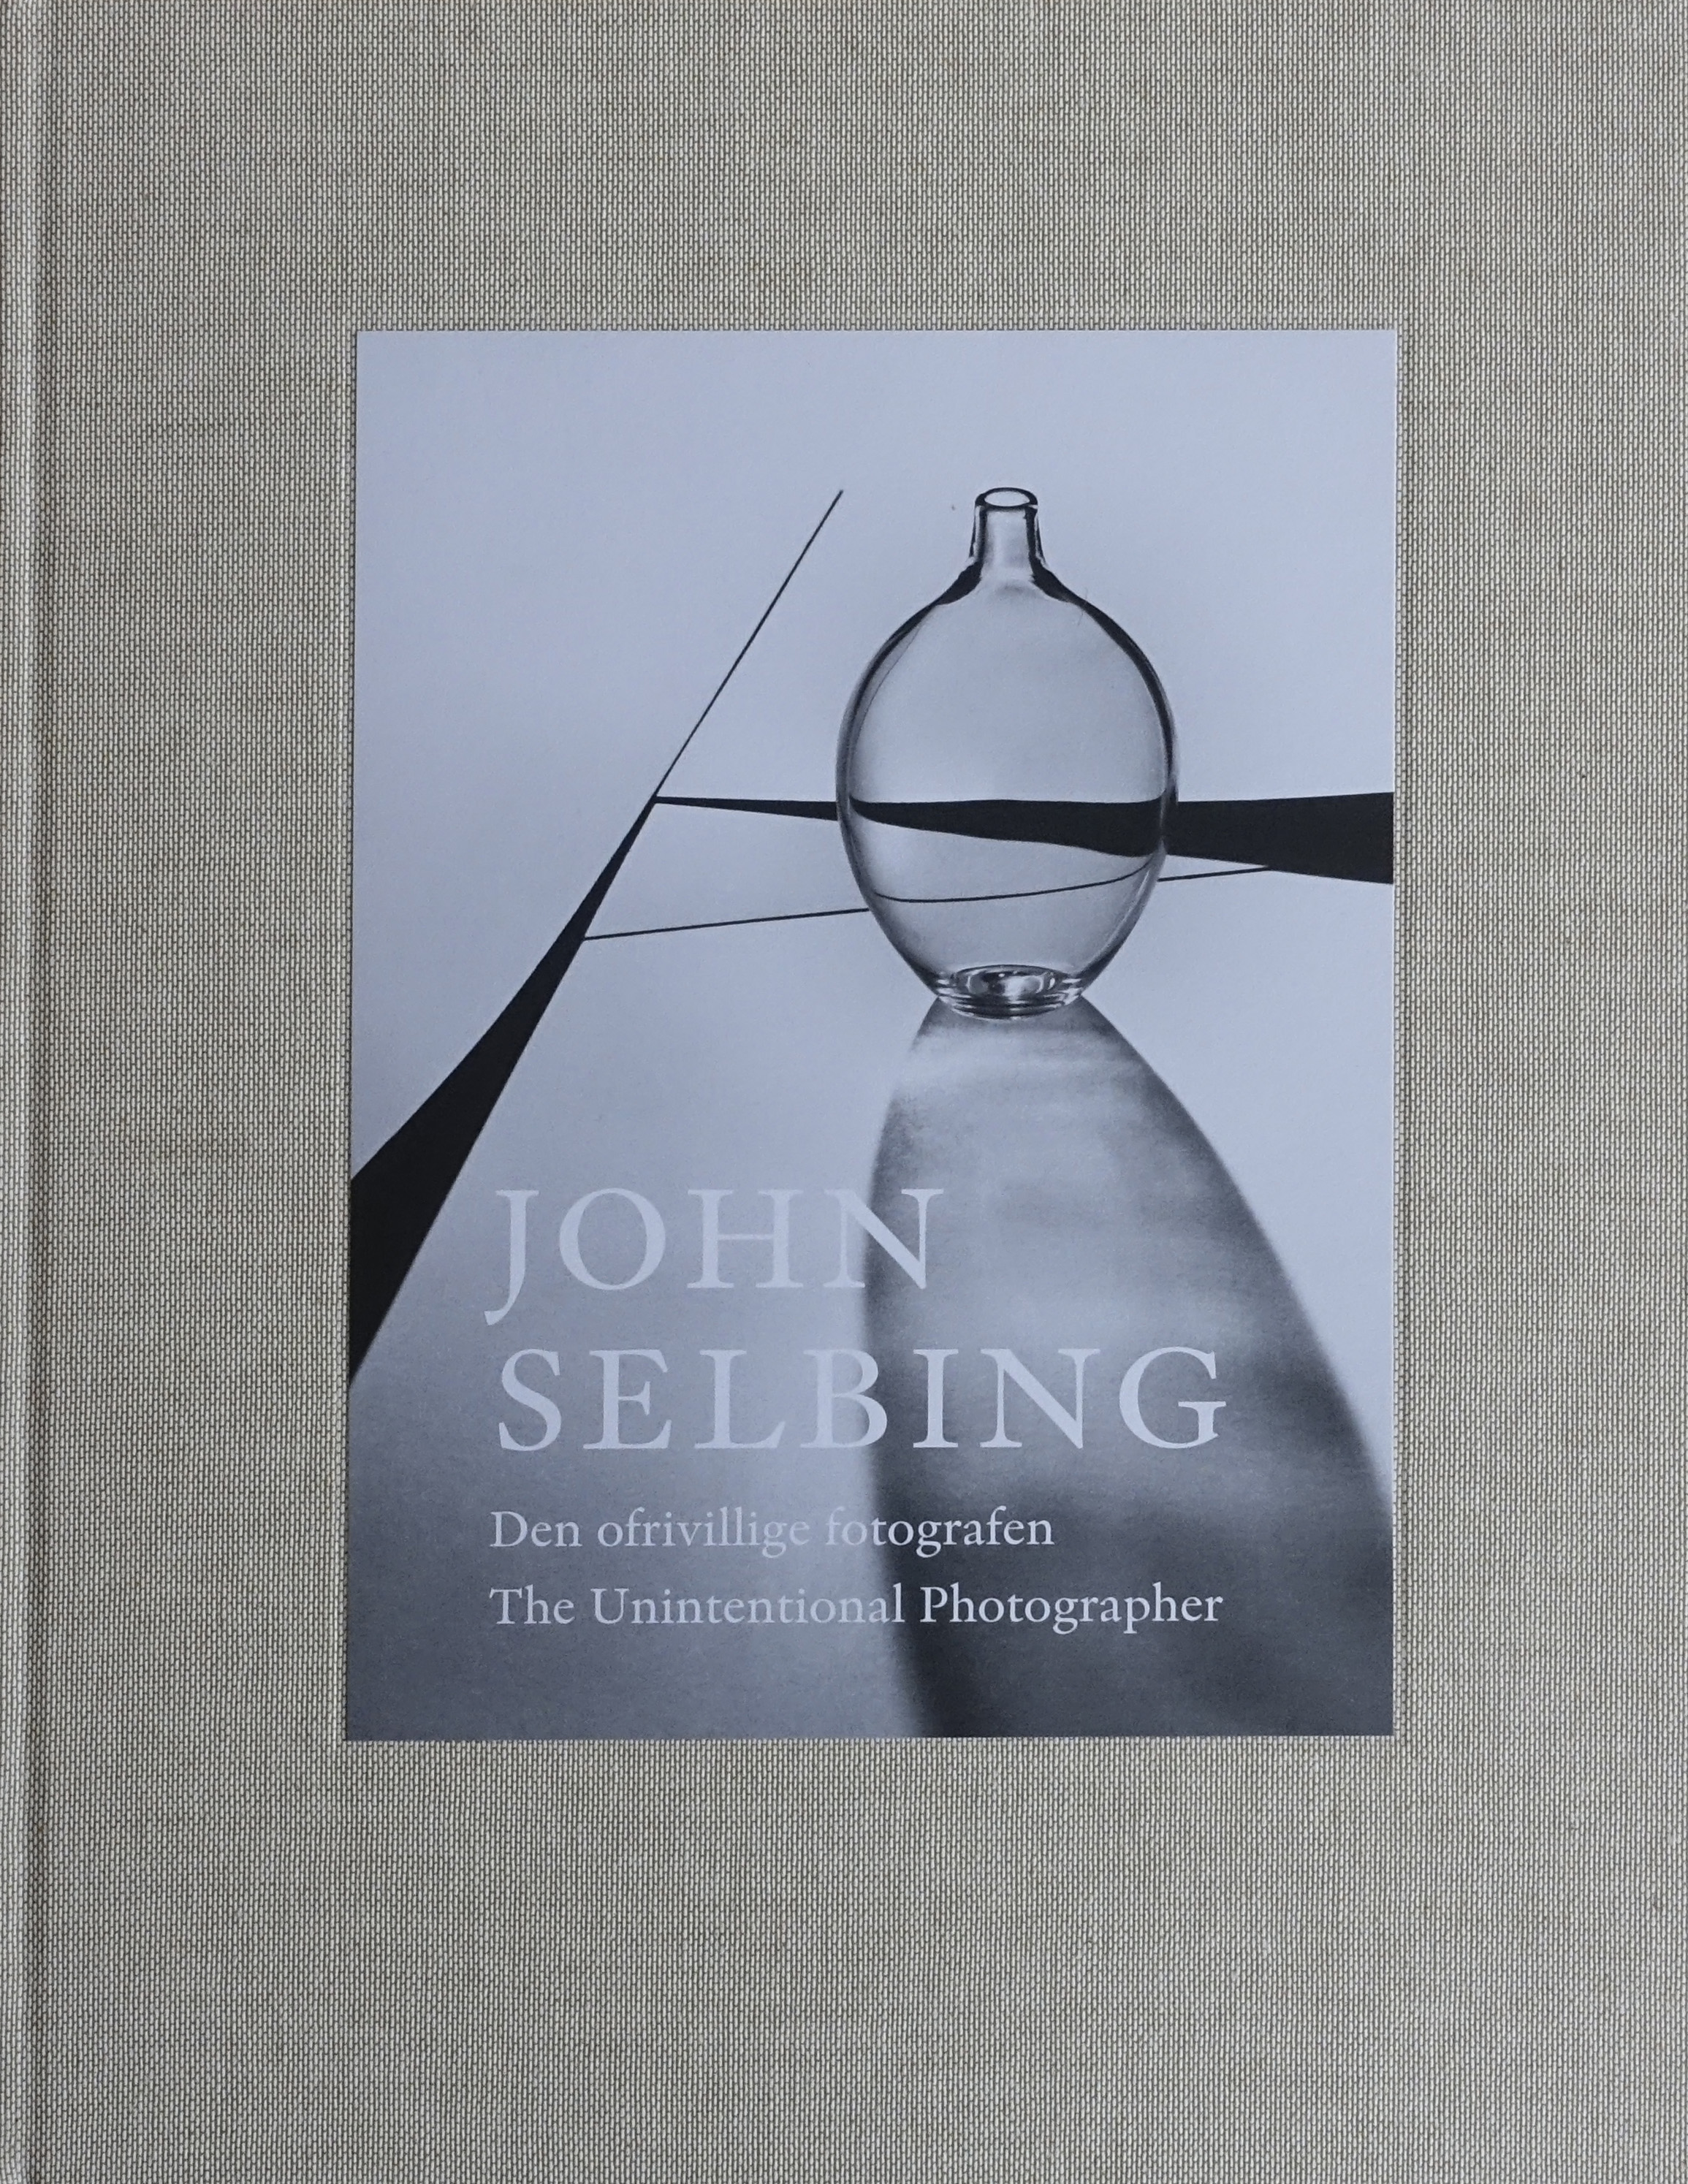 Mats Fredriksson, Jonas Sällberg:”John Selbing- den ofrivillige fotografen”